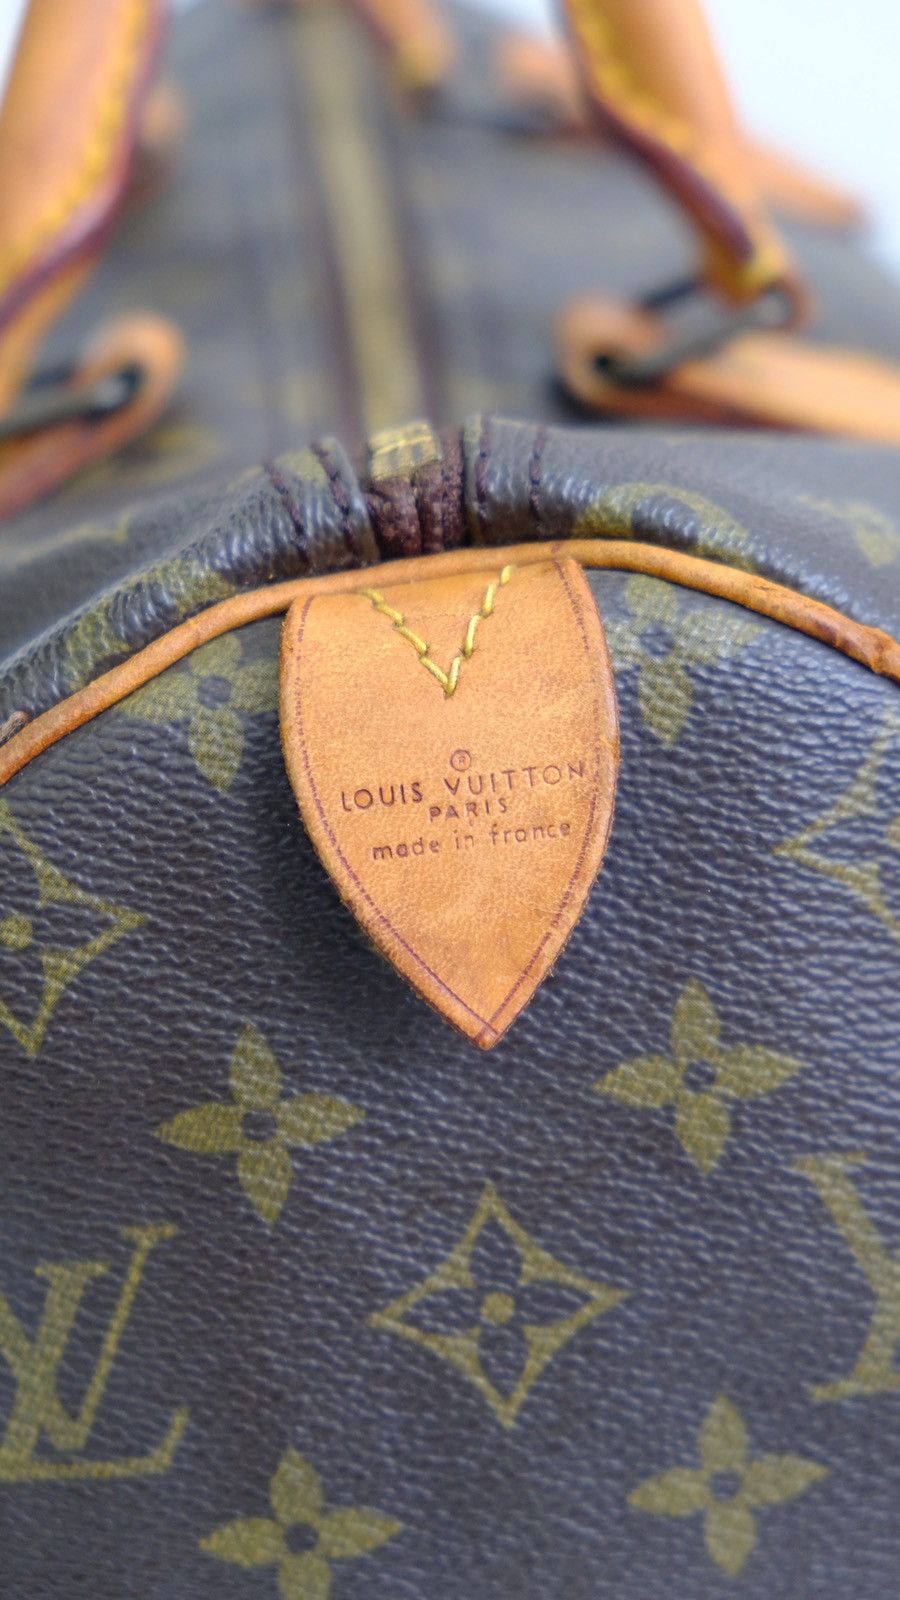 Authentic vintage Louis Vuitton speedy 30 bag - 16